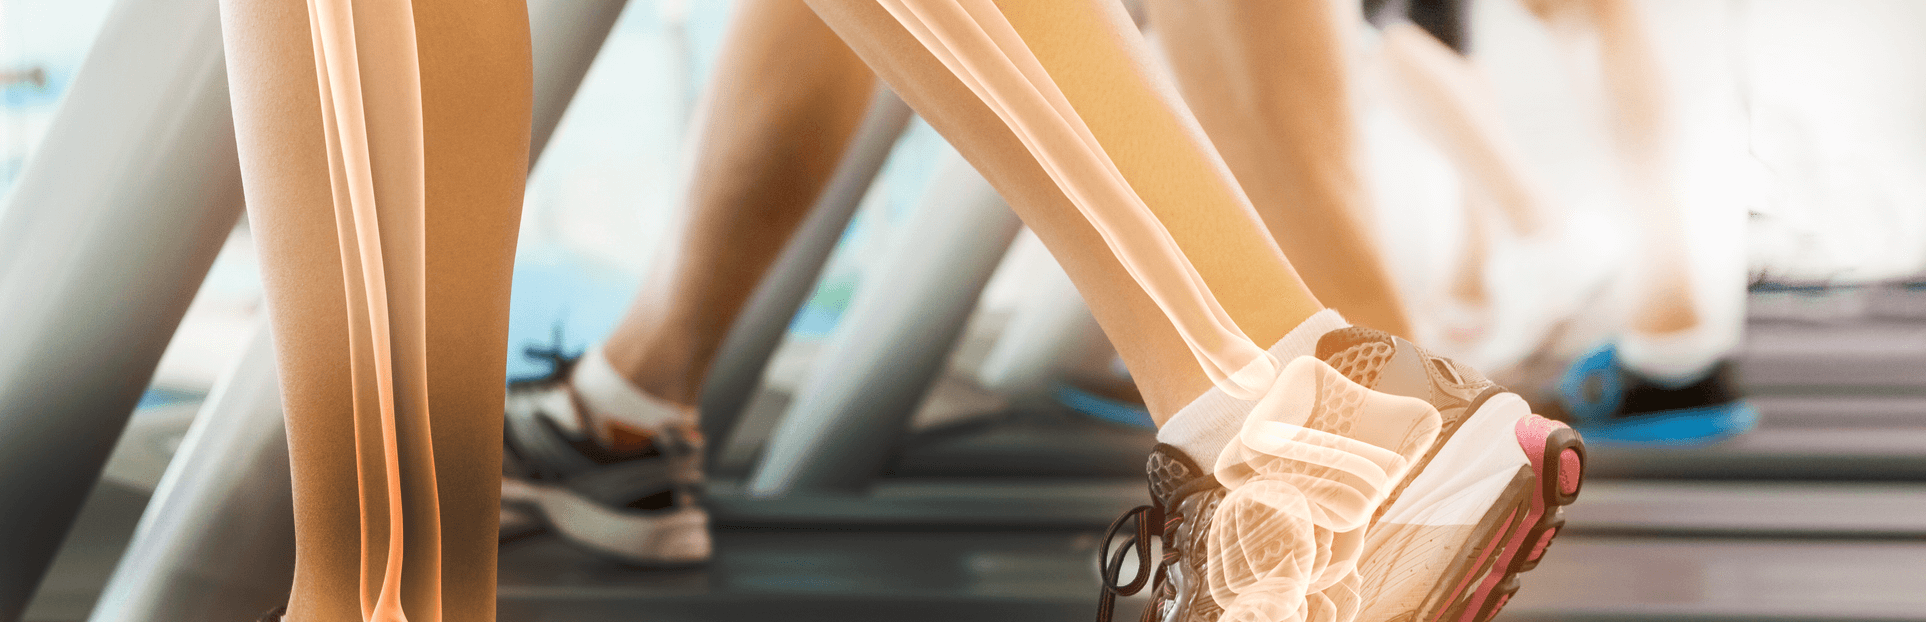 legs bones on treadmill trucal logo